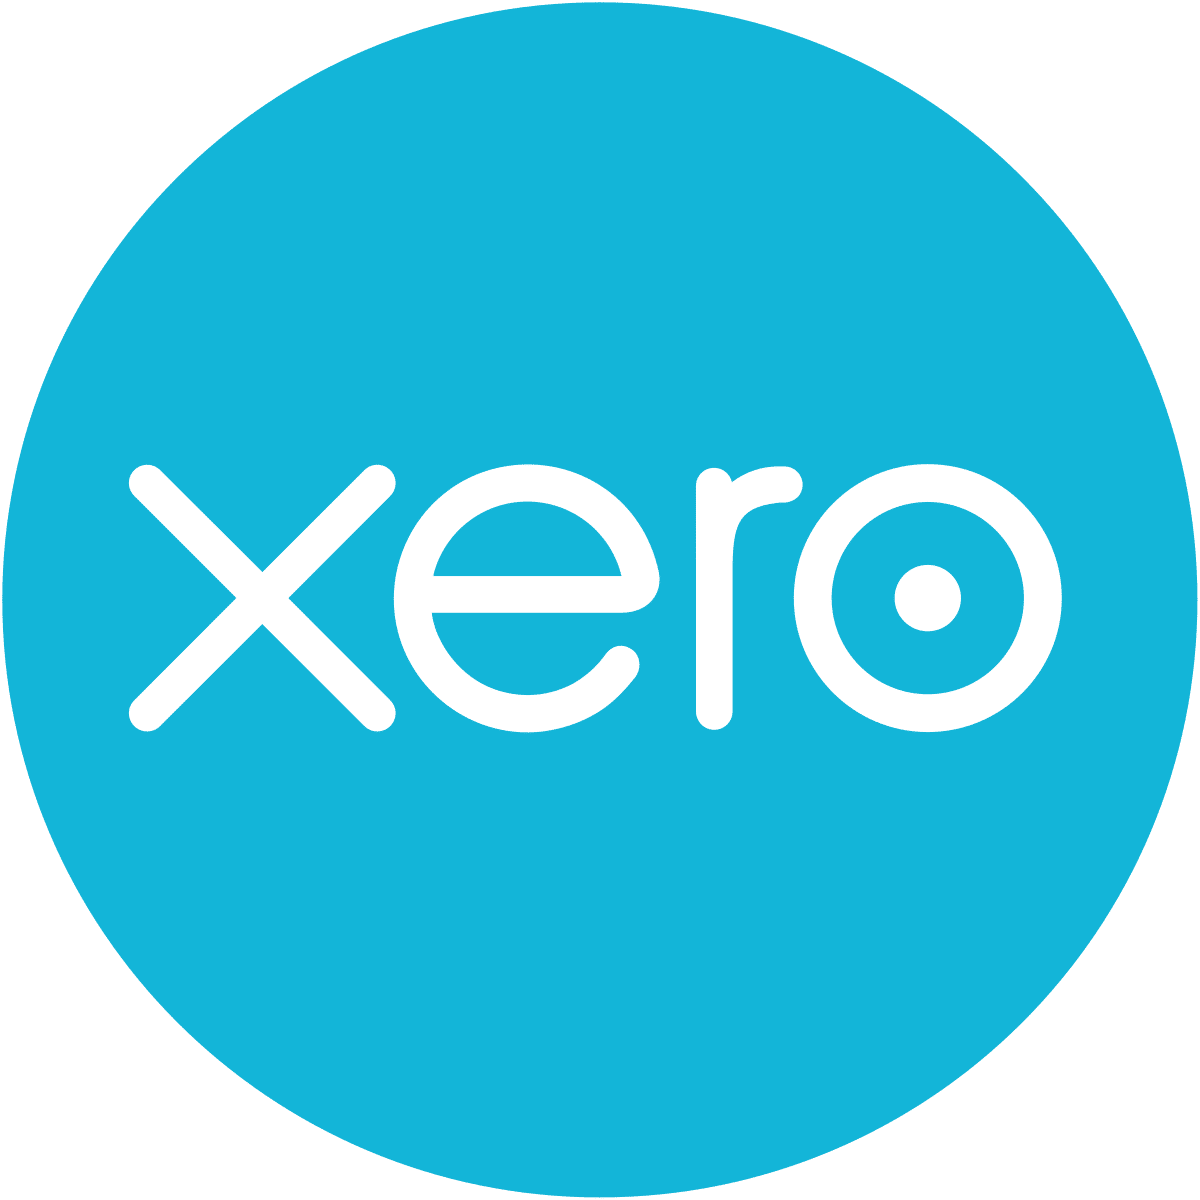 Xero Software Review